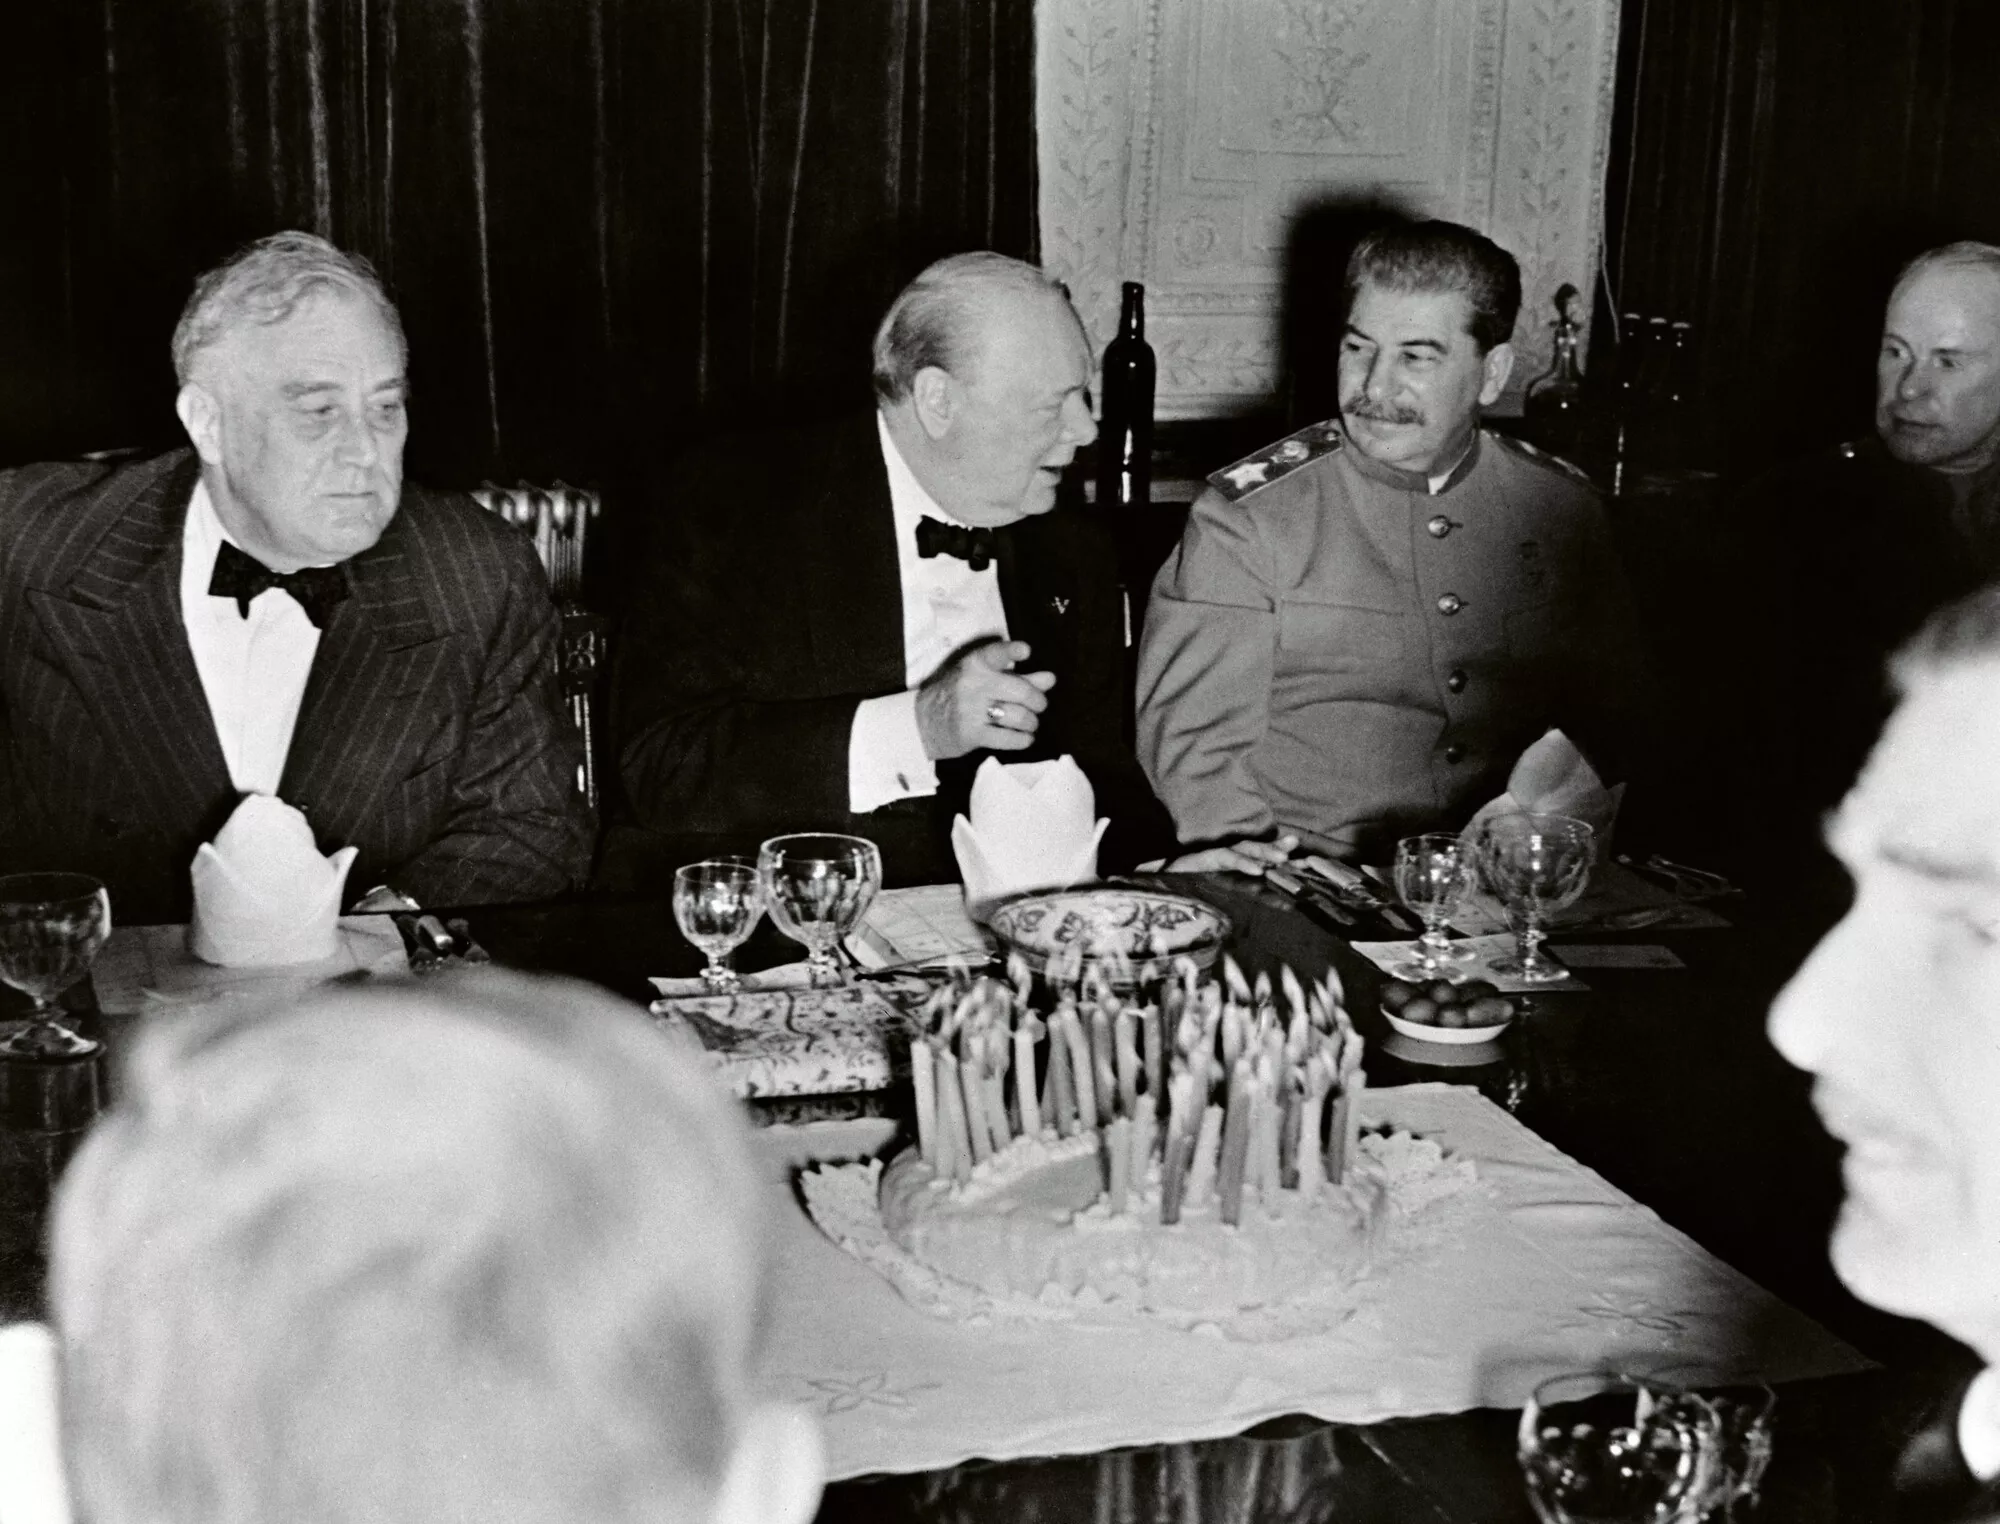 Winston Churchill avaa syntymäpäivänään Teheranissa samppanjapullon. Vasemmalla Franklin D. Roosevelt, oikealla Josif Stalin.